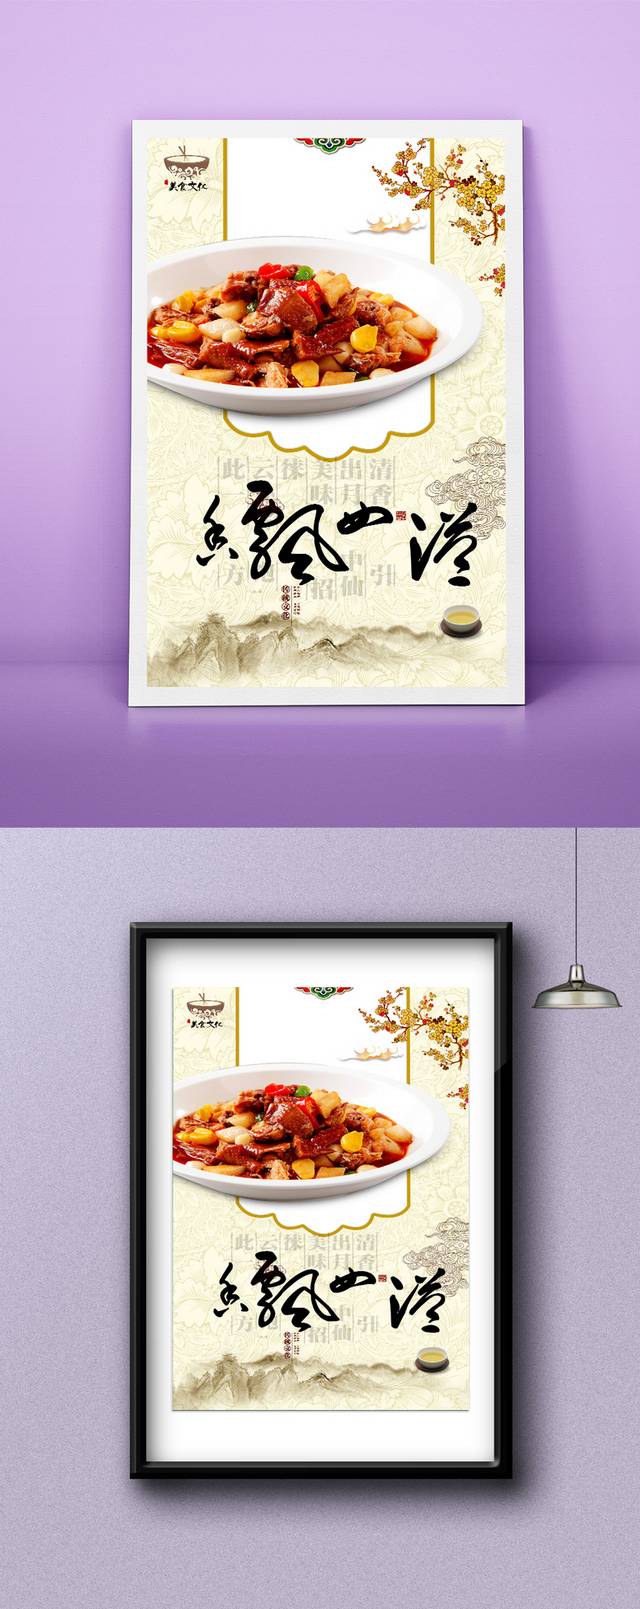 古典中华传统美食宣传海报设计